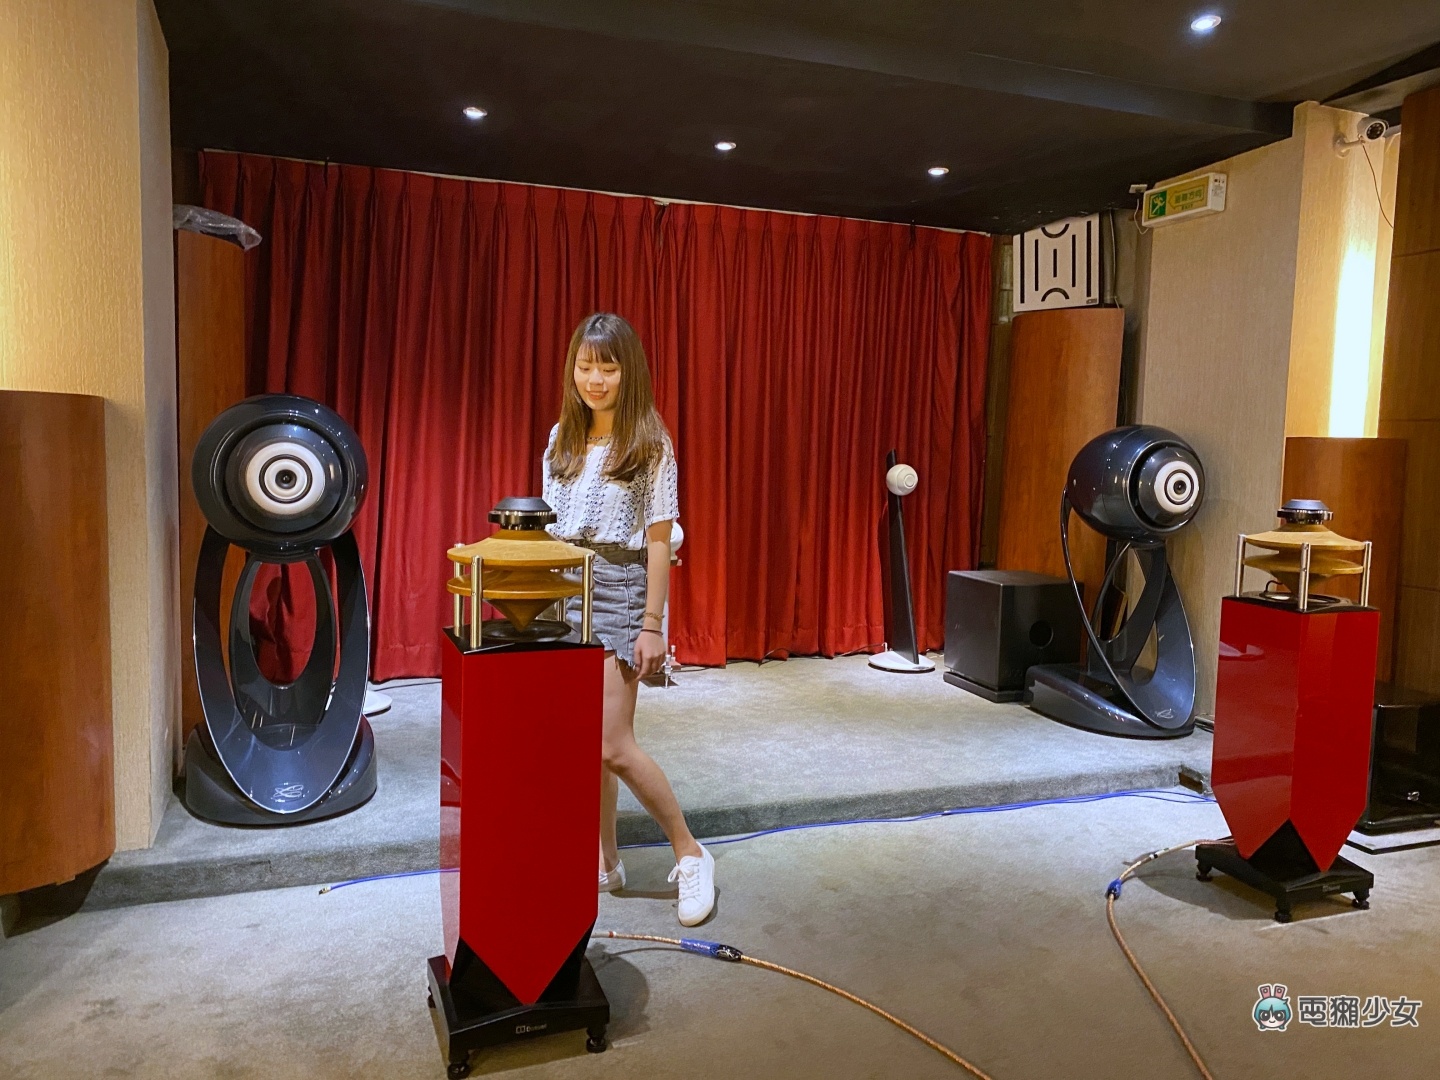 出門｜KKBOX 成為臺灣首個支援 Hi-Fi 無損音質的音樂串流平台！已有超過 4000 萬首歌曲可以聽啦！